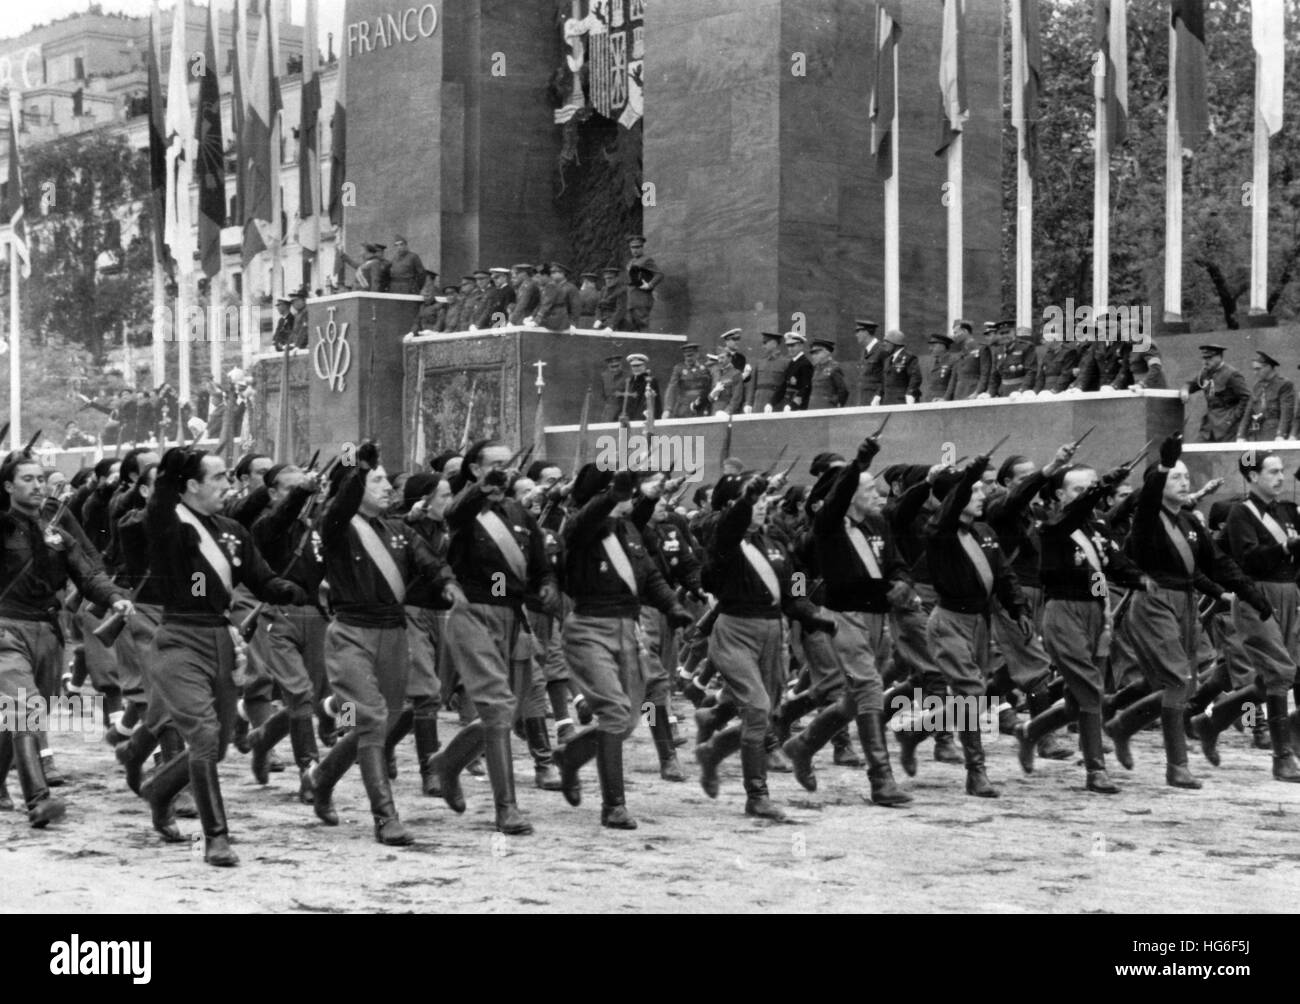 Das Nazi-Propagandafild zeigt den marsch faschistischer Milizen aus Italien (gemeinhin als "Blackshirts" bezeichnet) anlässlich der großen Siegesparade nach Francos Machtergreifung in Madrid, Spanien, im Mai 1939. Fotoarchiv für Zeitgeschichtee- KEIN KABELDIENST - | weltweite Nutzung Stockfoto